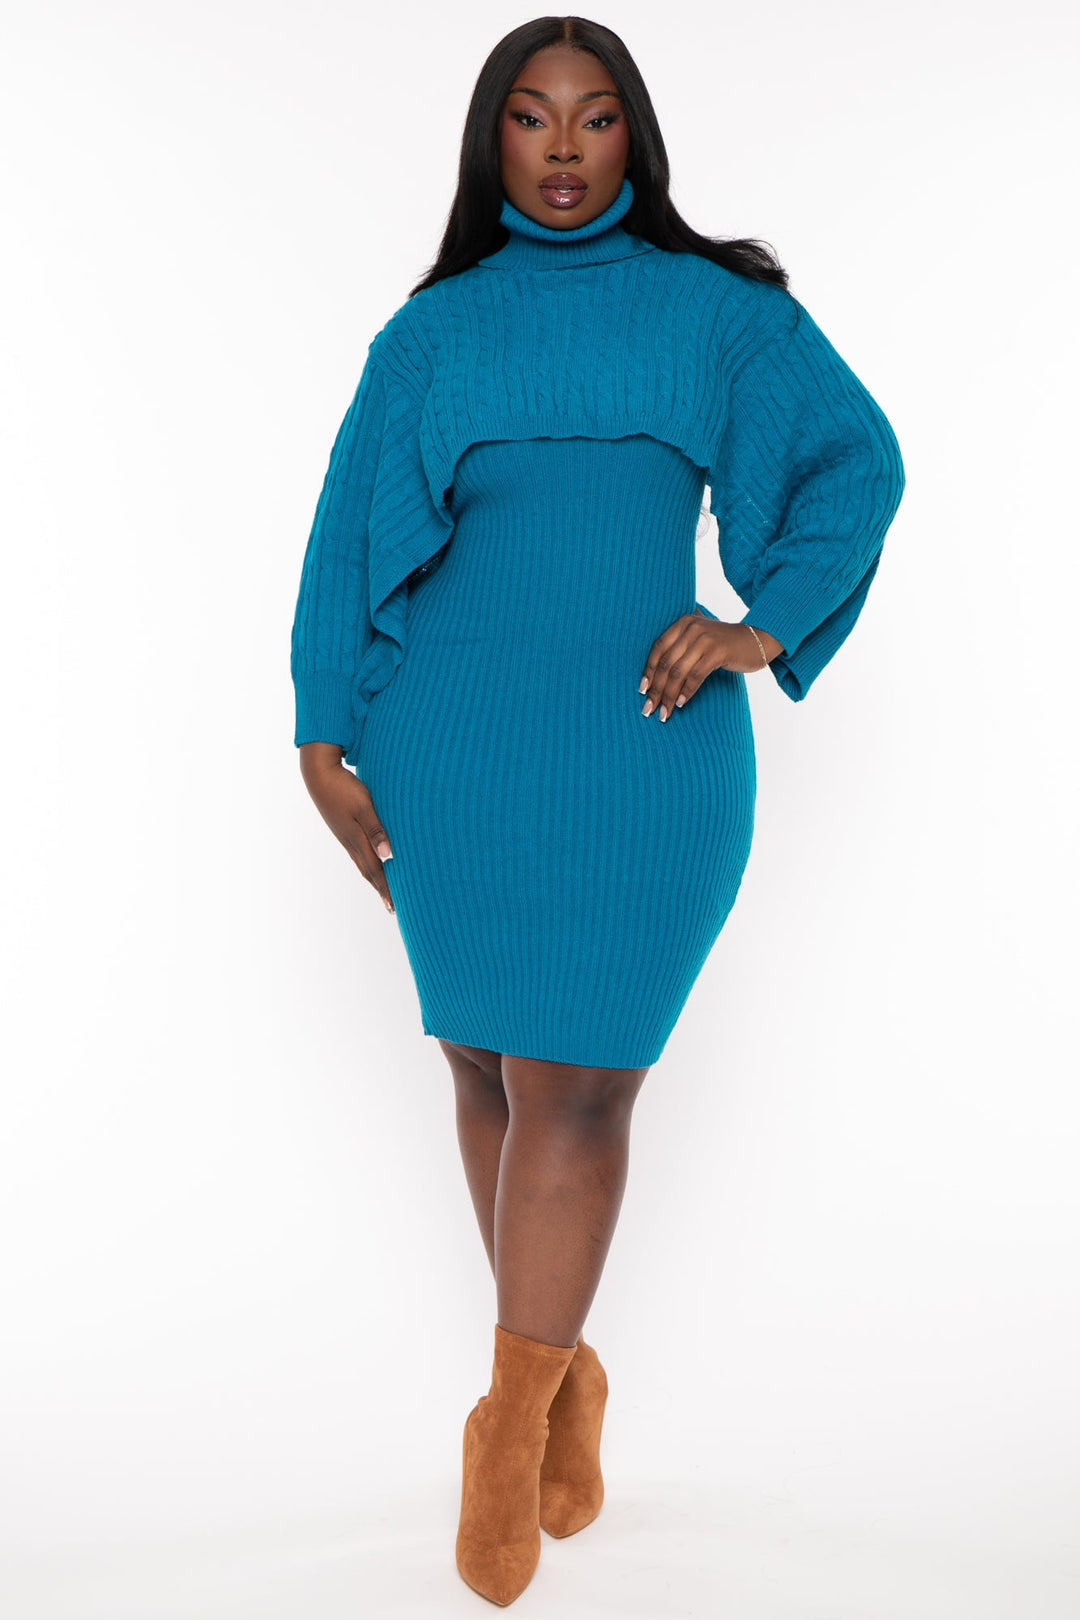 sweaterland Dresses 1X / Blue Plus Size Joyce Sweater Matching Set - Blue